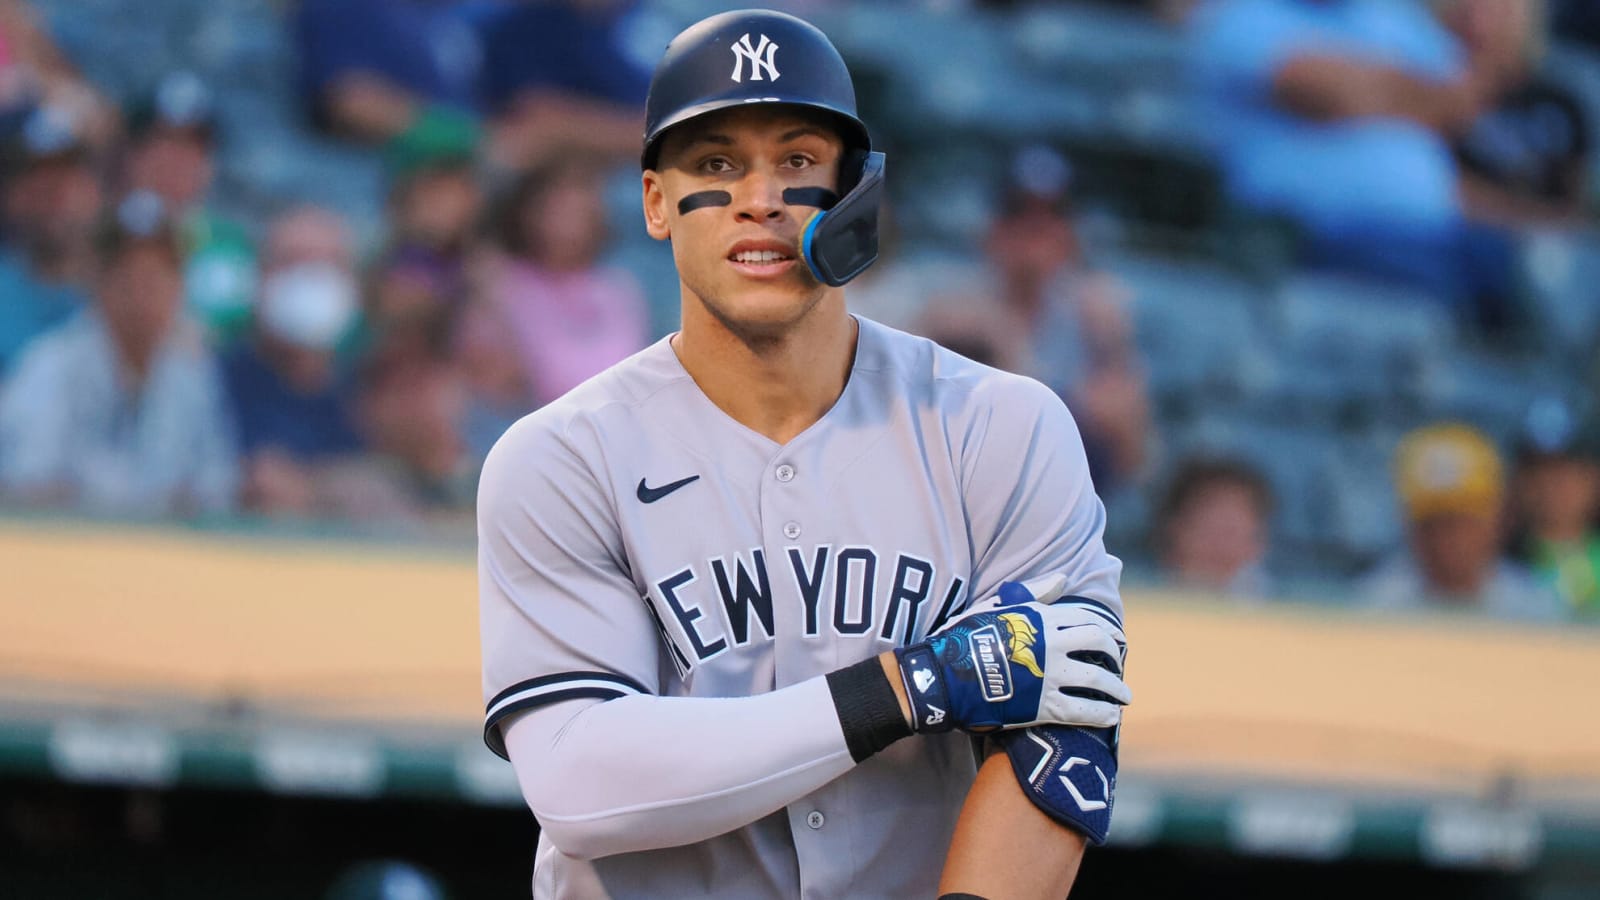 Aaron Judge's player edition Jordan cleats get mocked amidst Yankees'  nine-game losing streak